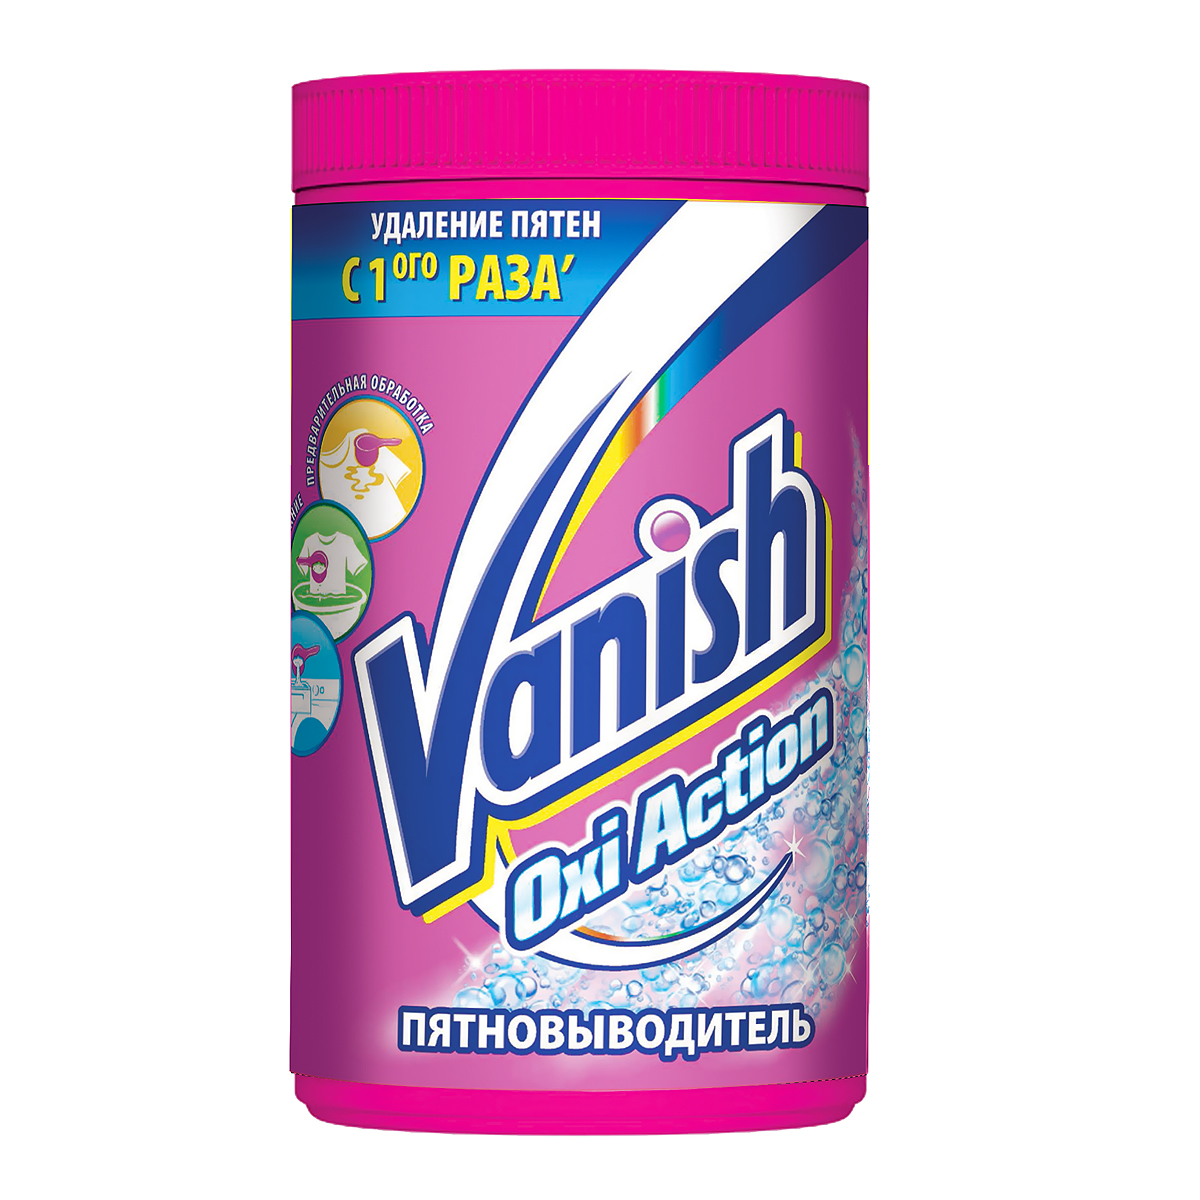   Vanish Oxi Action  , 1,5  - Vanish - Vanish0306751 Vanish Oxi Action     , ,     .         ,     .         .   ,  ,     .